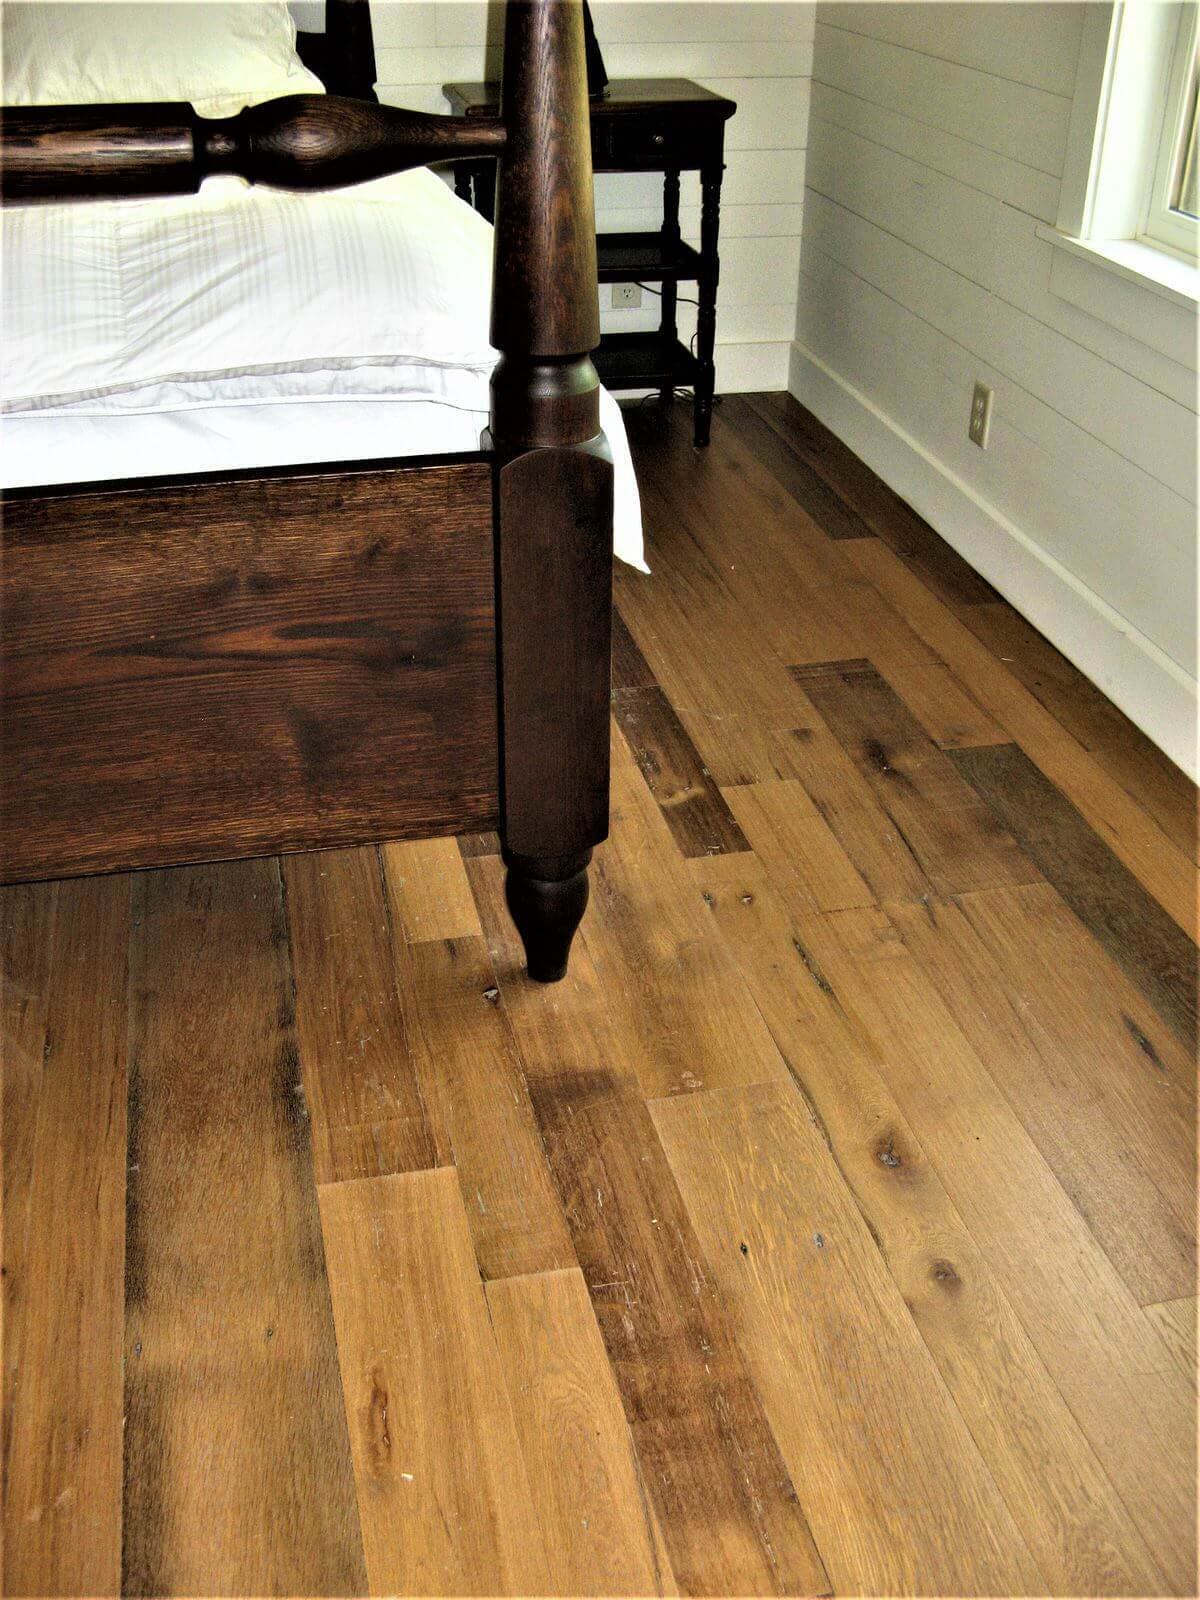 Classic wood flooring in bedroom.